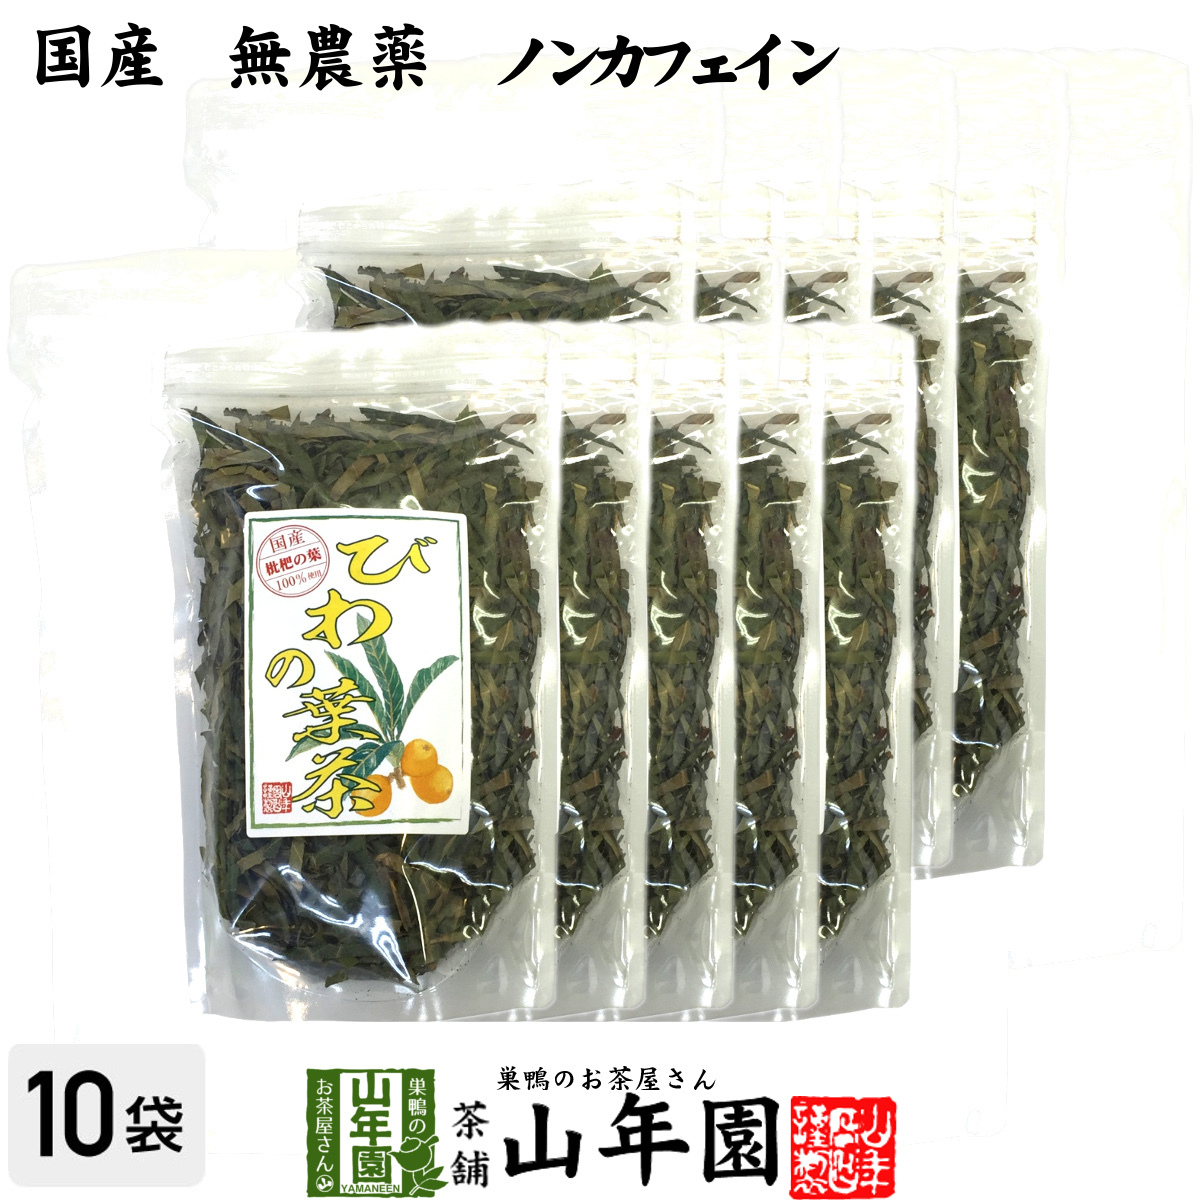 健康茶 国産100% びわ茶 びわの葉茶 100g×10袋セット 無農薬 ノンカフェイン 送料無料